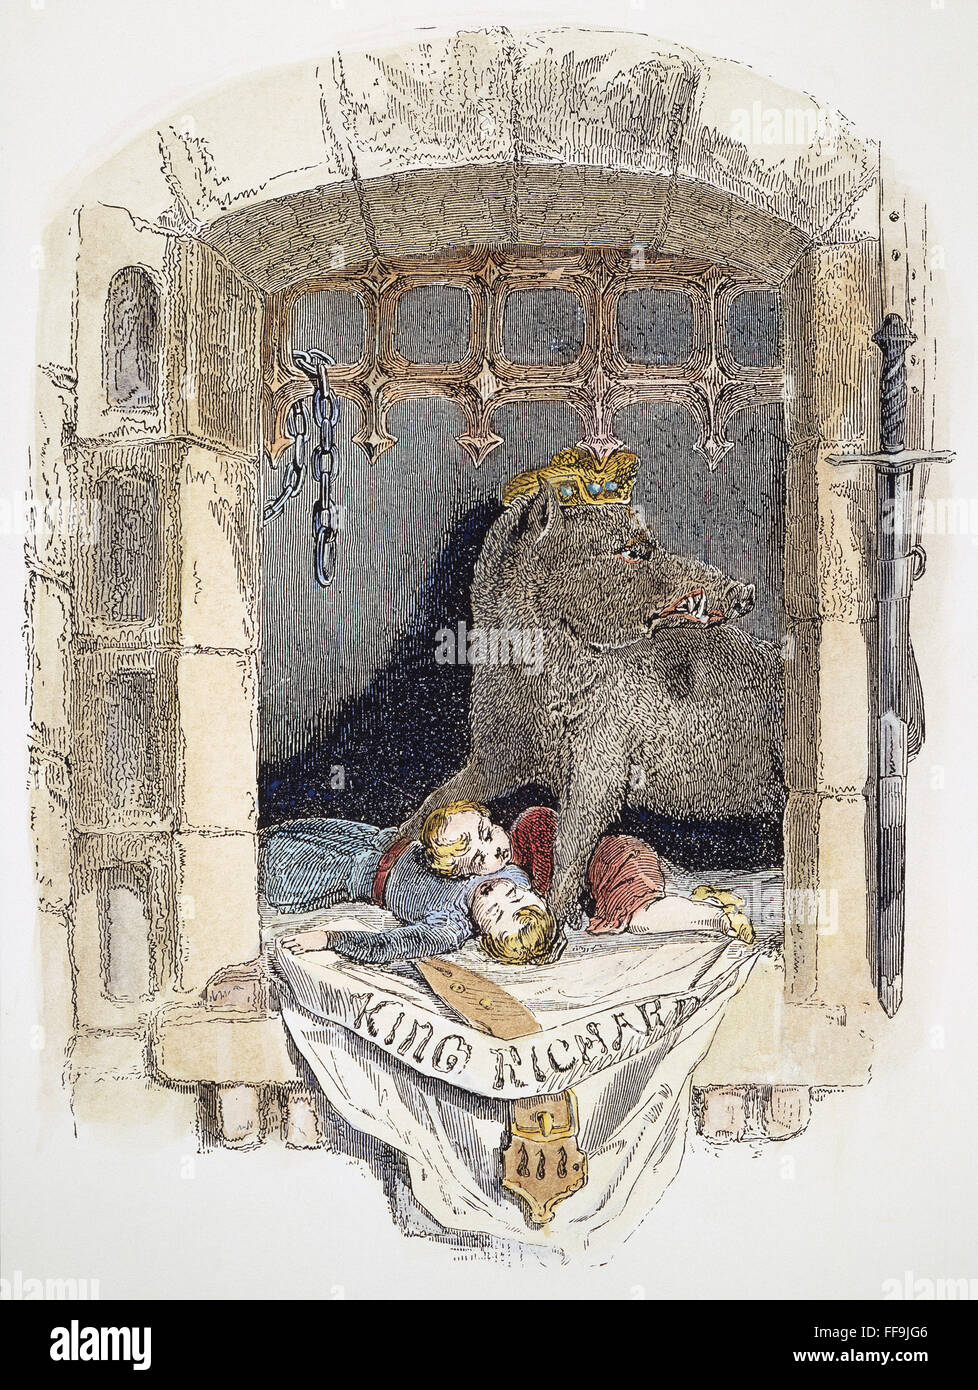 Le roi Richard III. /NTitle page d'une édition du 19e siècle William Shakespeare's 'le roi Richard III", la gravure sur bois d'après sir John Gilbert (1817-1897). Banque D'Images